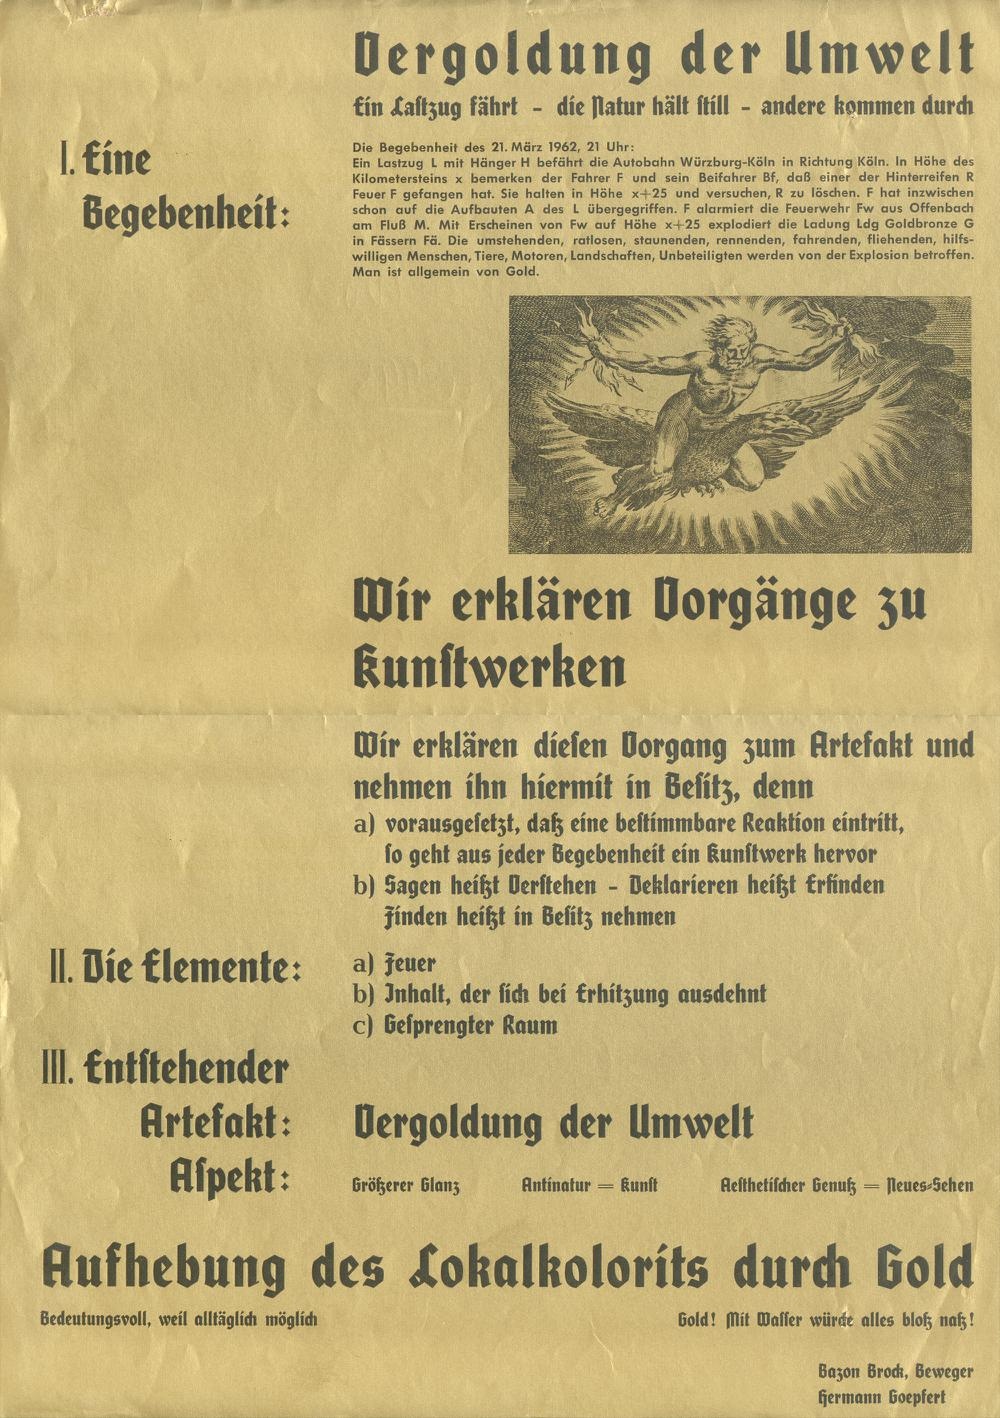 Manifest zur Aktion "Vergoldung der Umwelt" von Bazon Brock und Hermann Goepfert, Bild: Frankfurt am Main 1962.